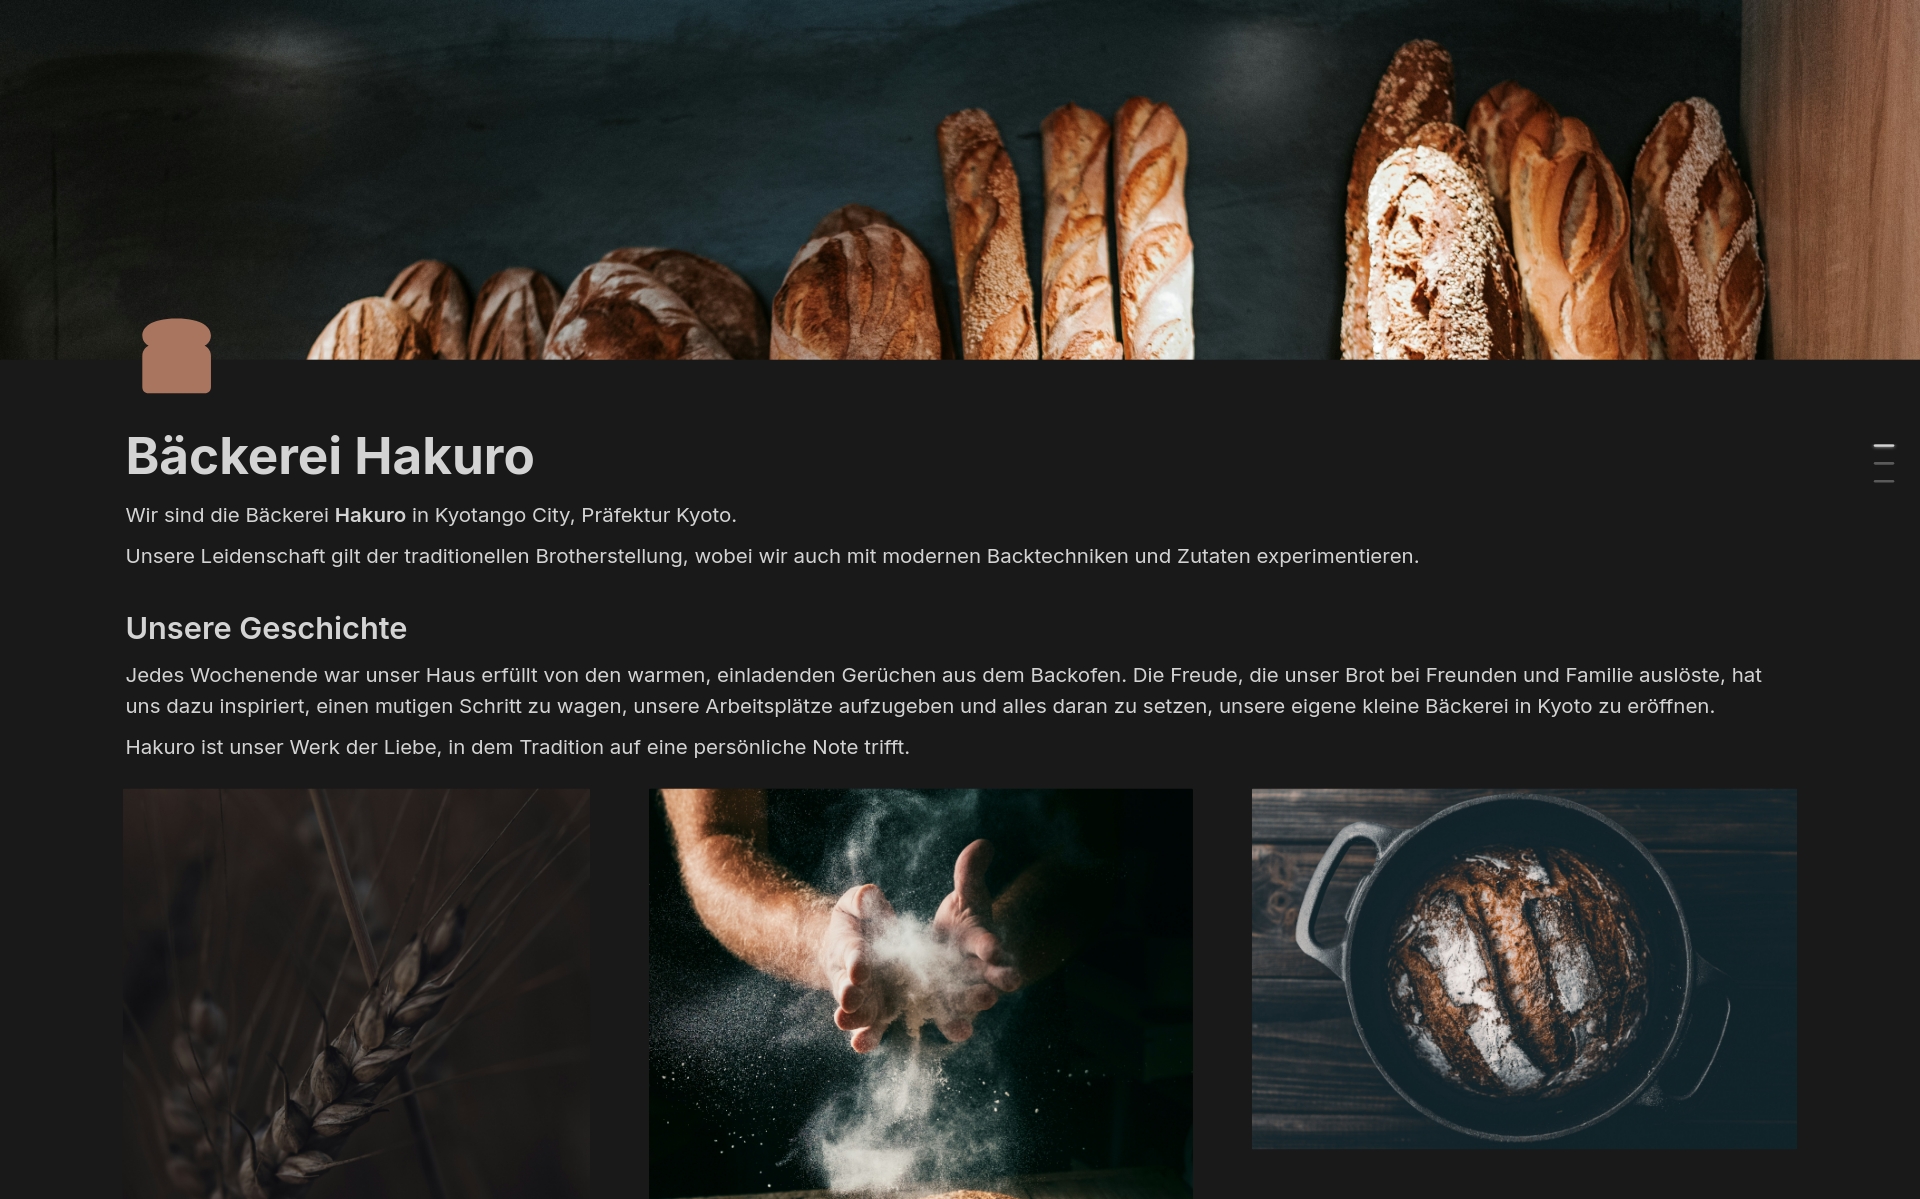 Eine Vorlage für eine elegante Website deiner Bäckerei.